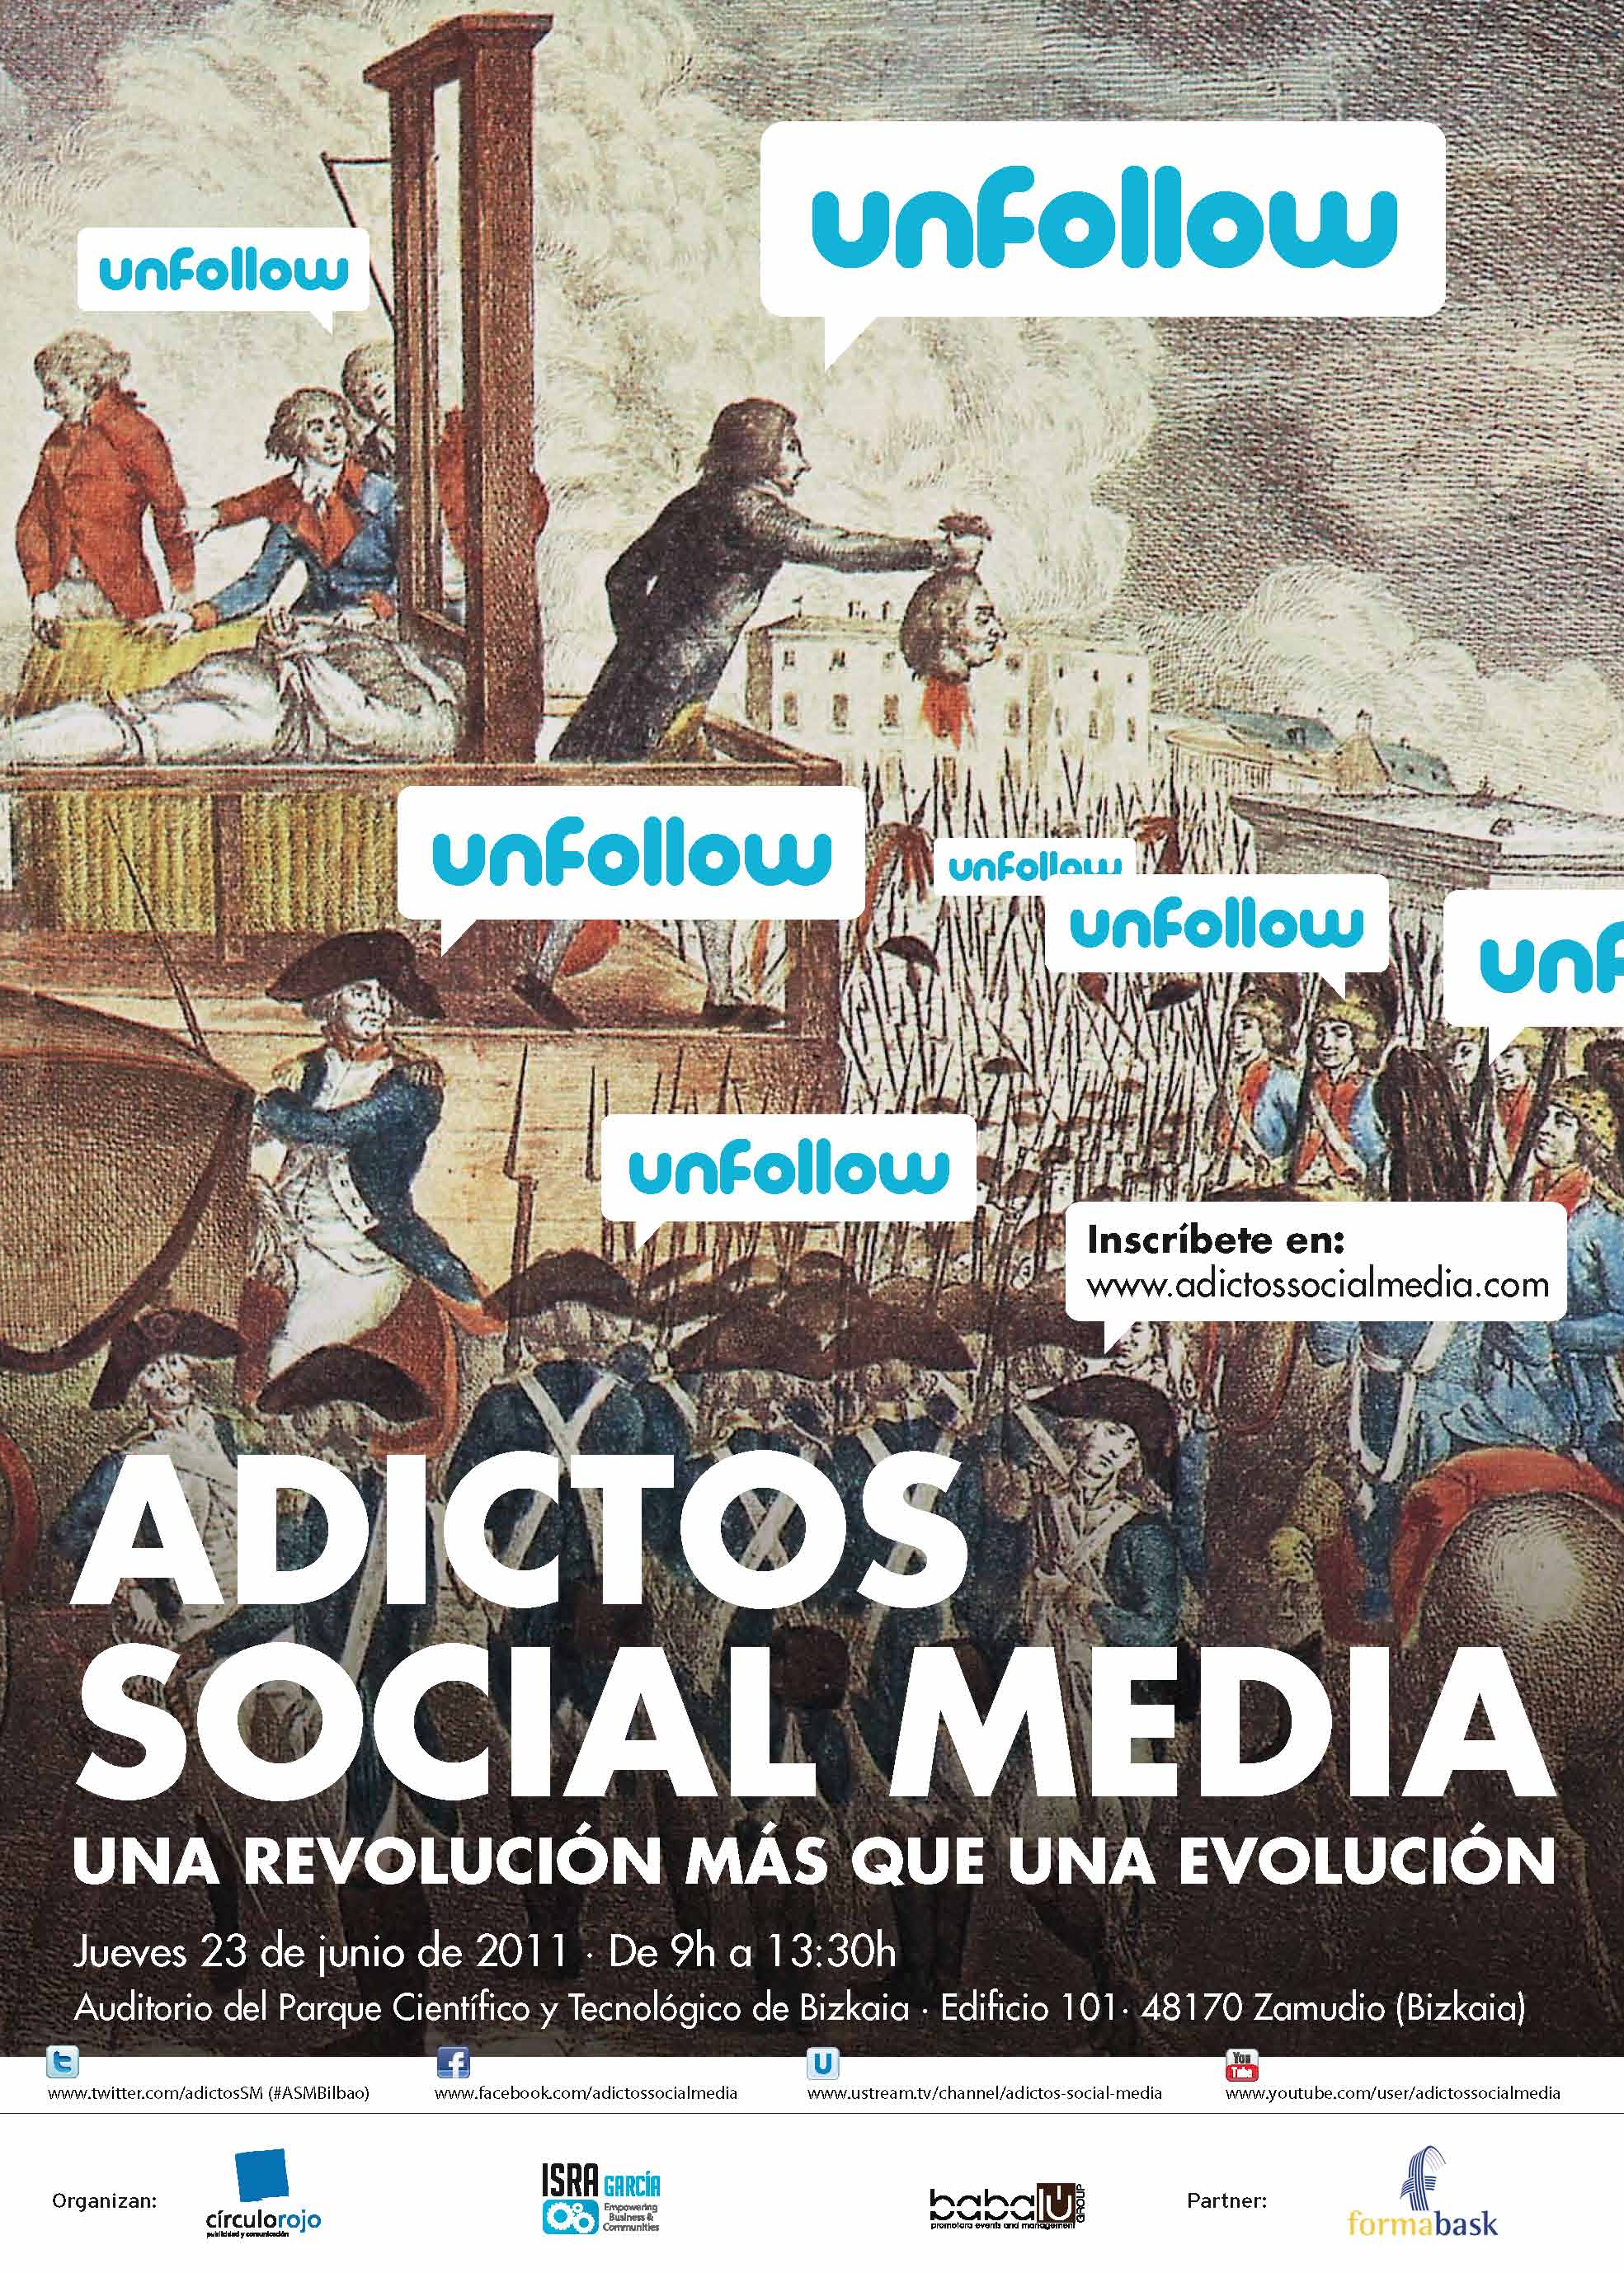 ASMBilbao - social media una revolución más que una evolución